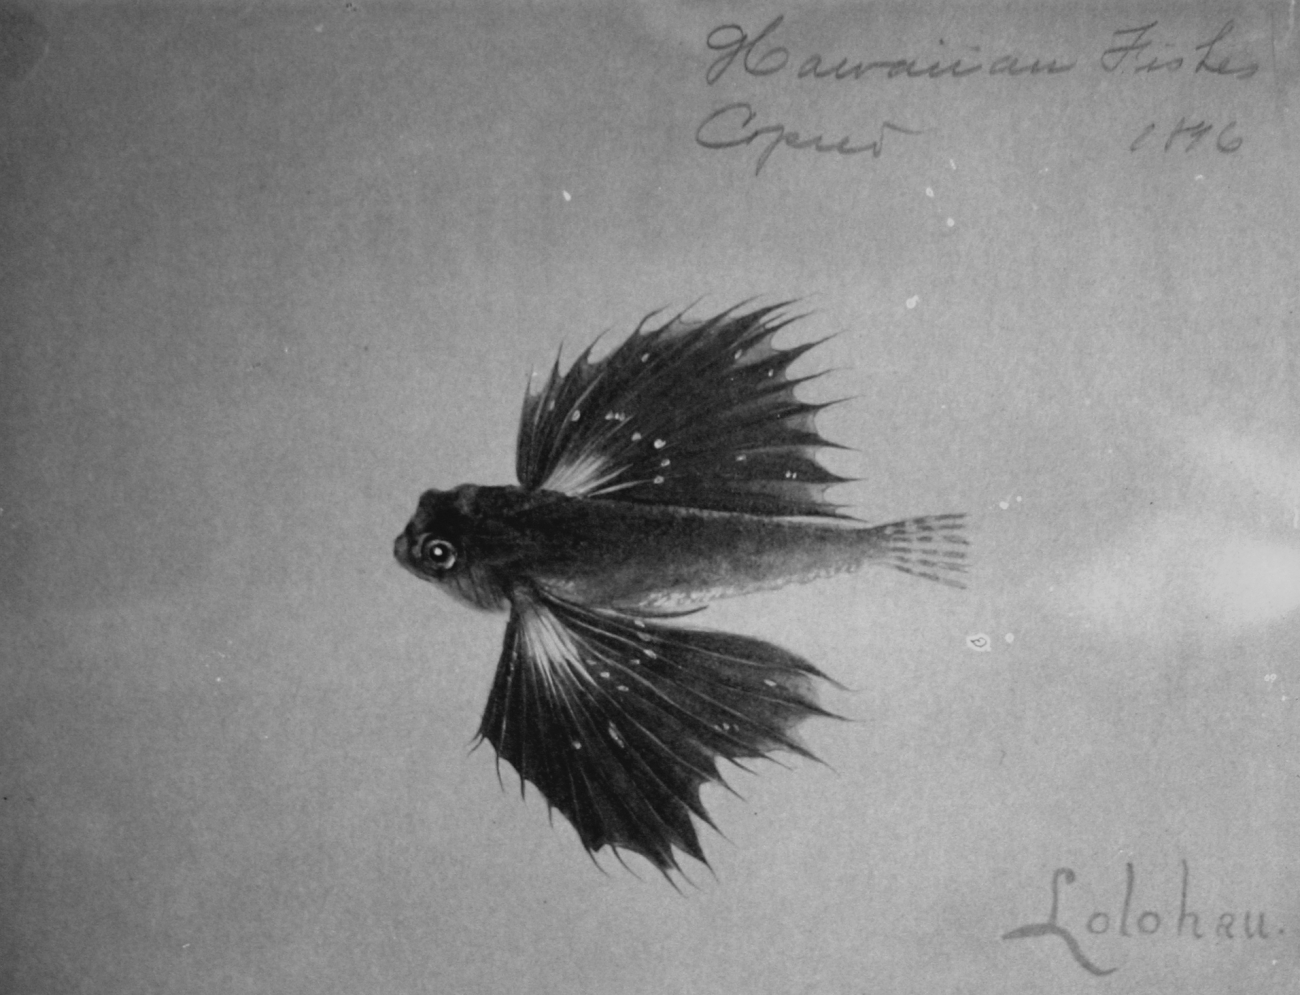 Hawaiian fishes, 1896, Lolohua